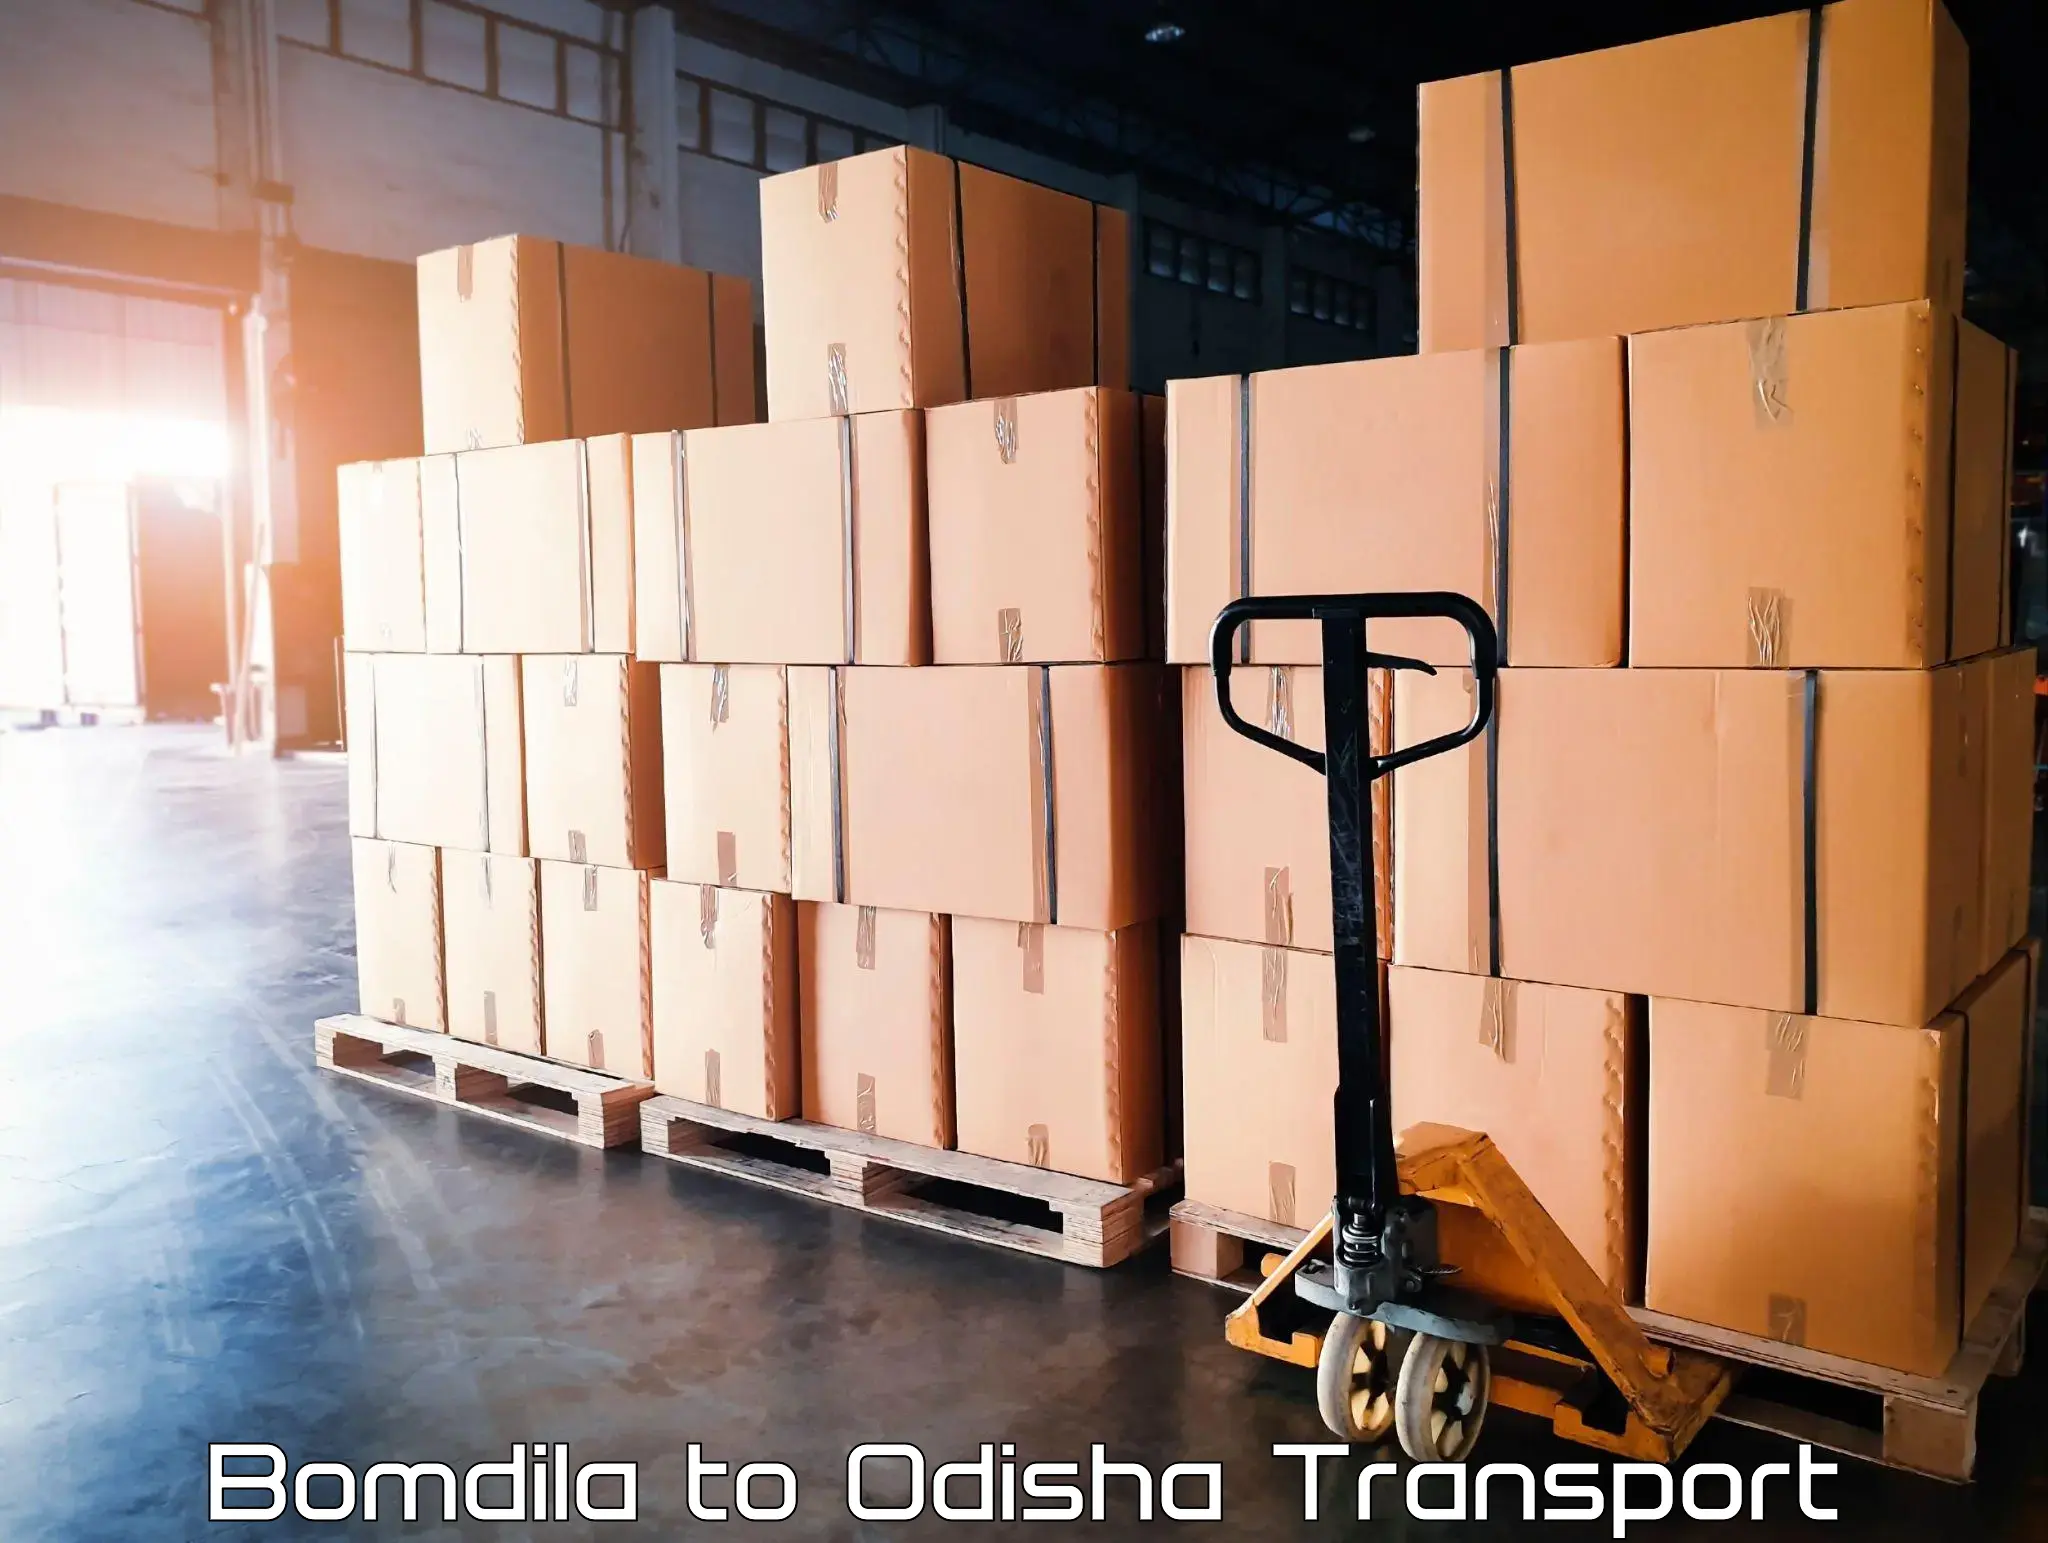 Bike transport service Bomdila to Odisha